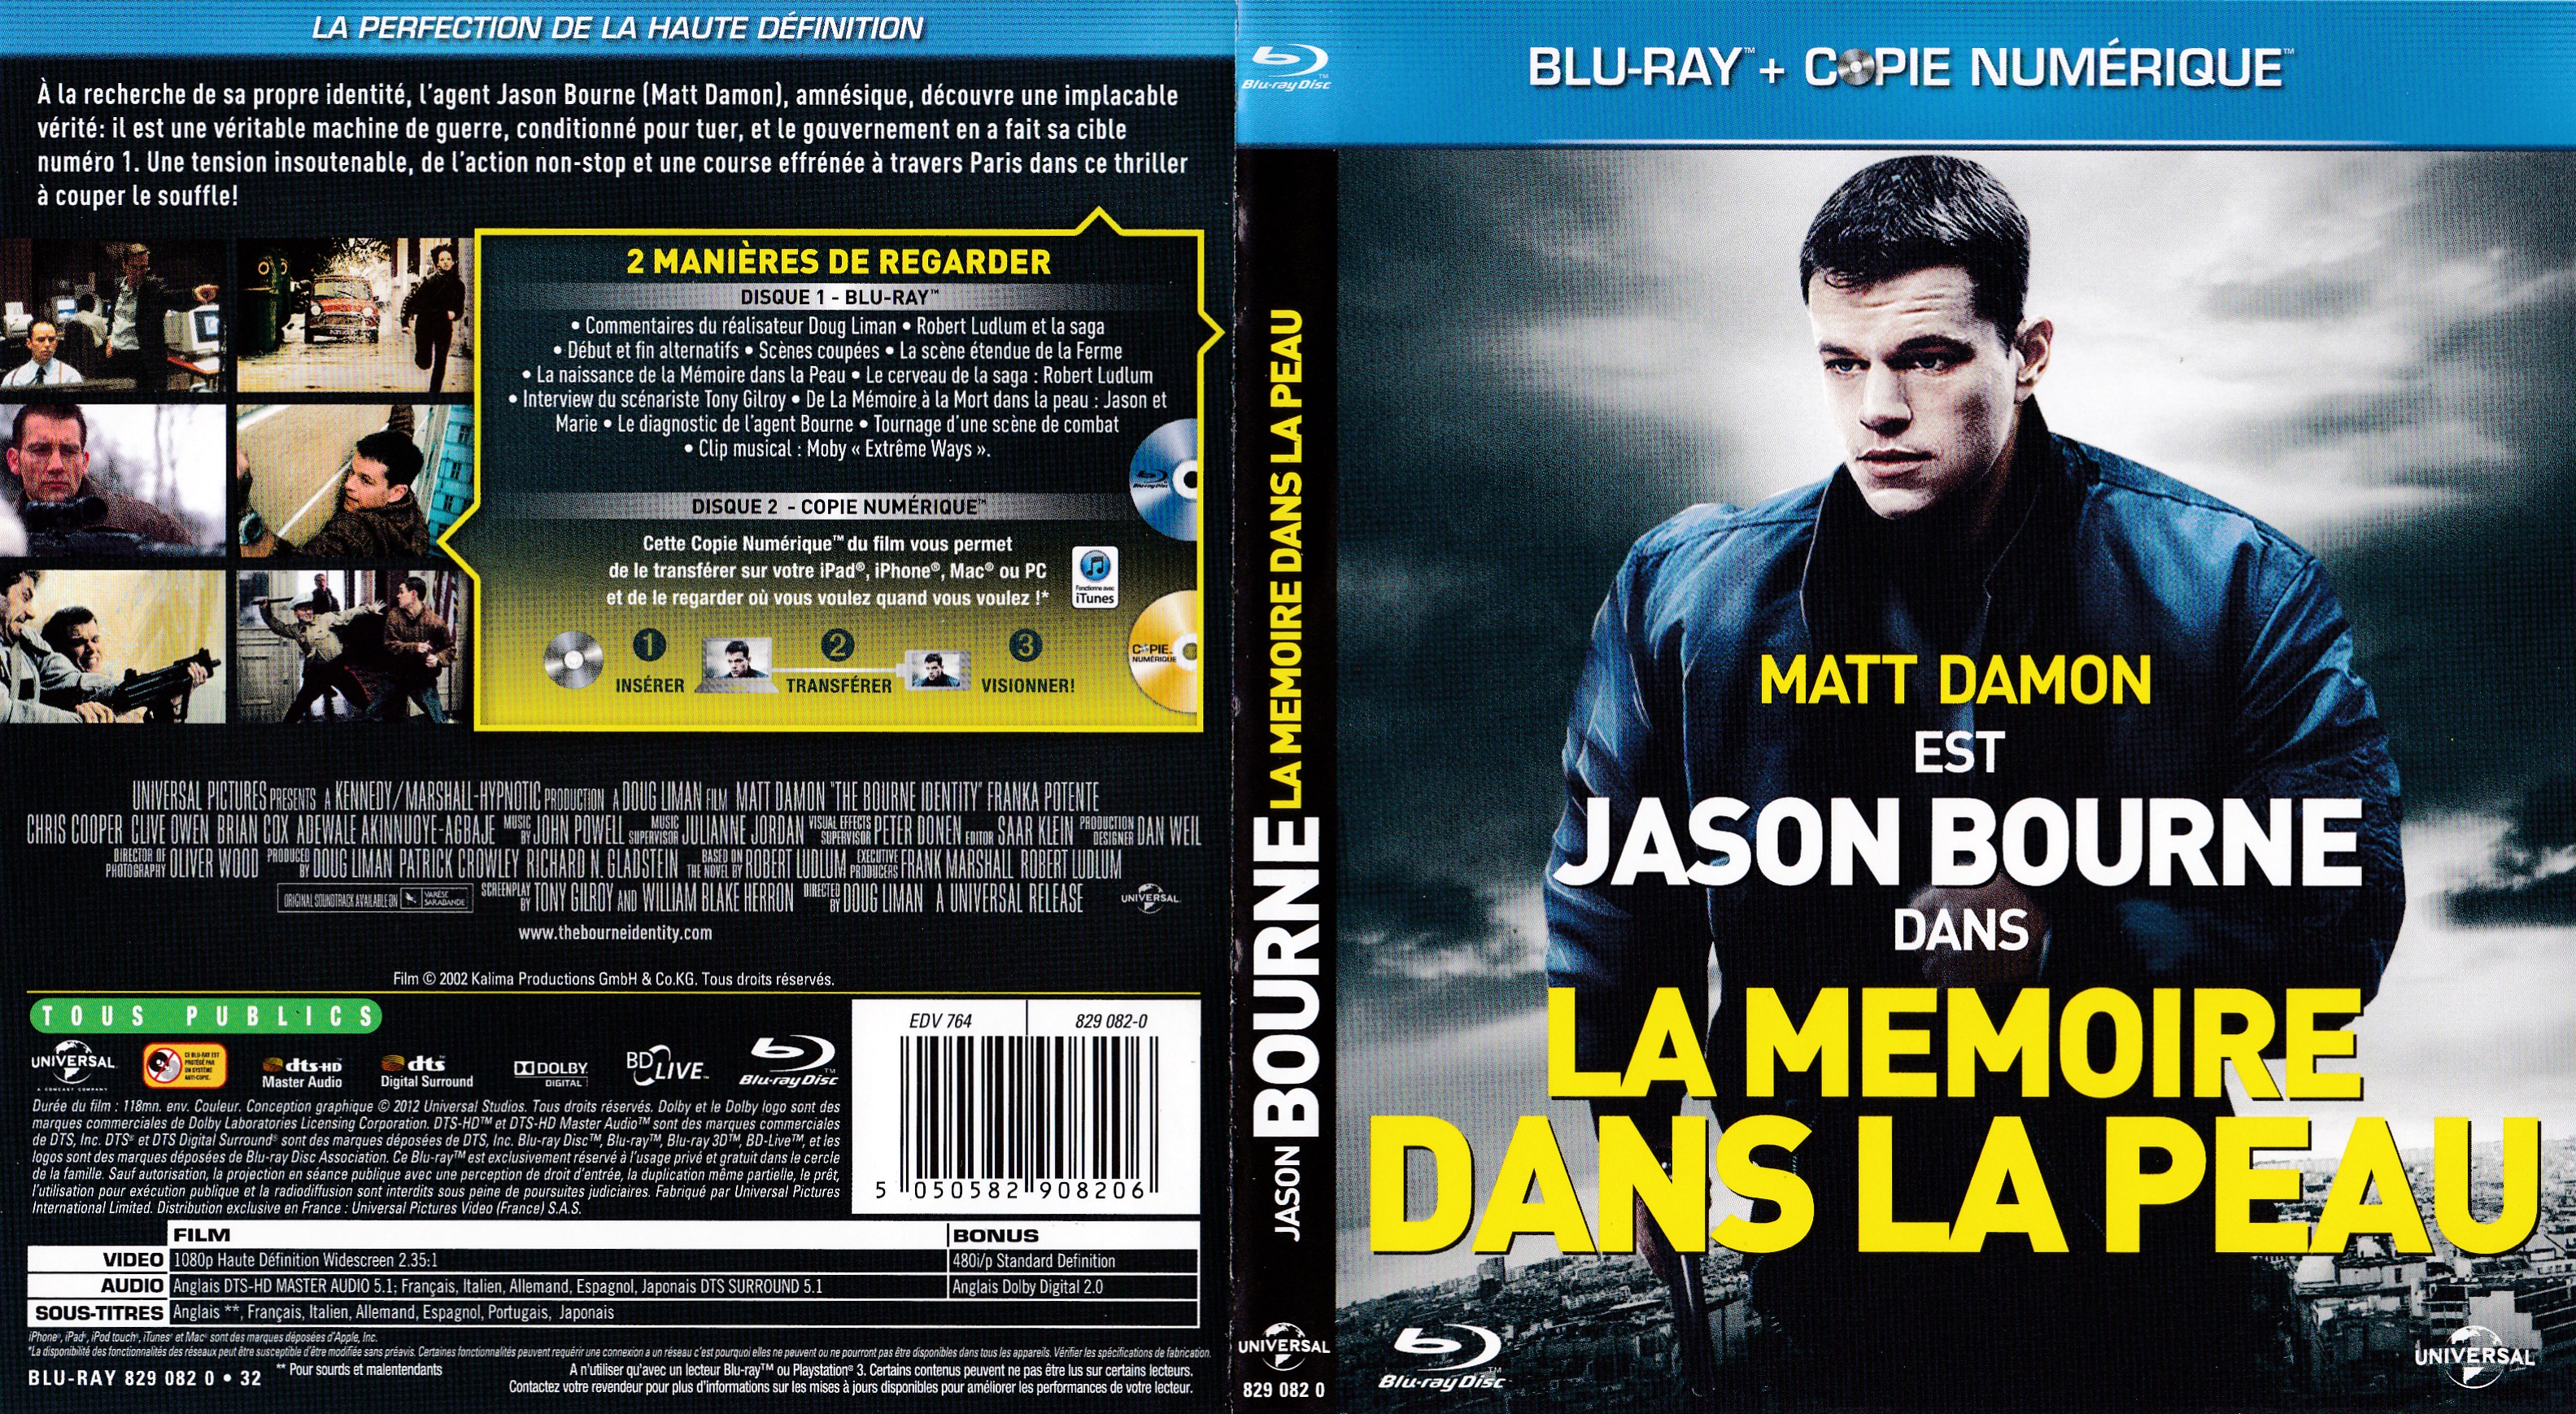 Jaquette DVD La mmoire dans la peau (BLU-RAY) v2